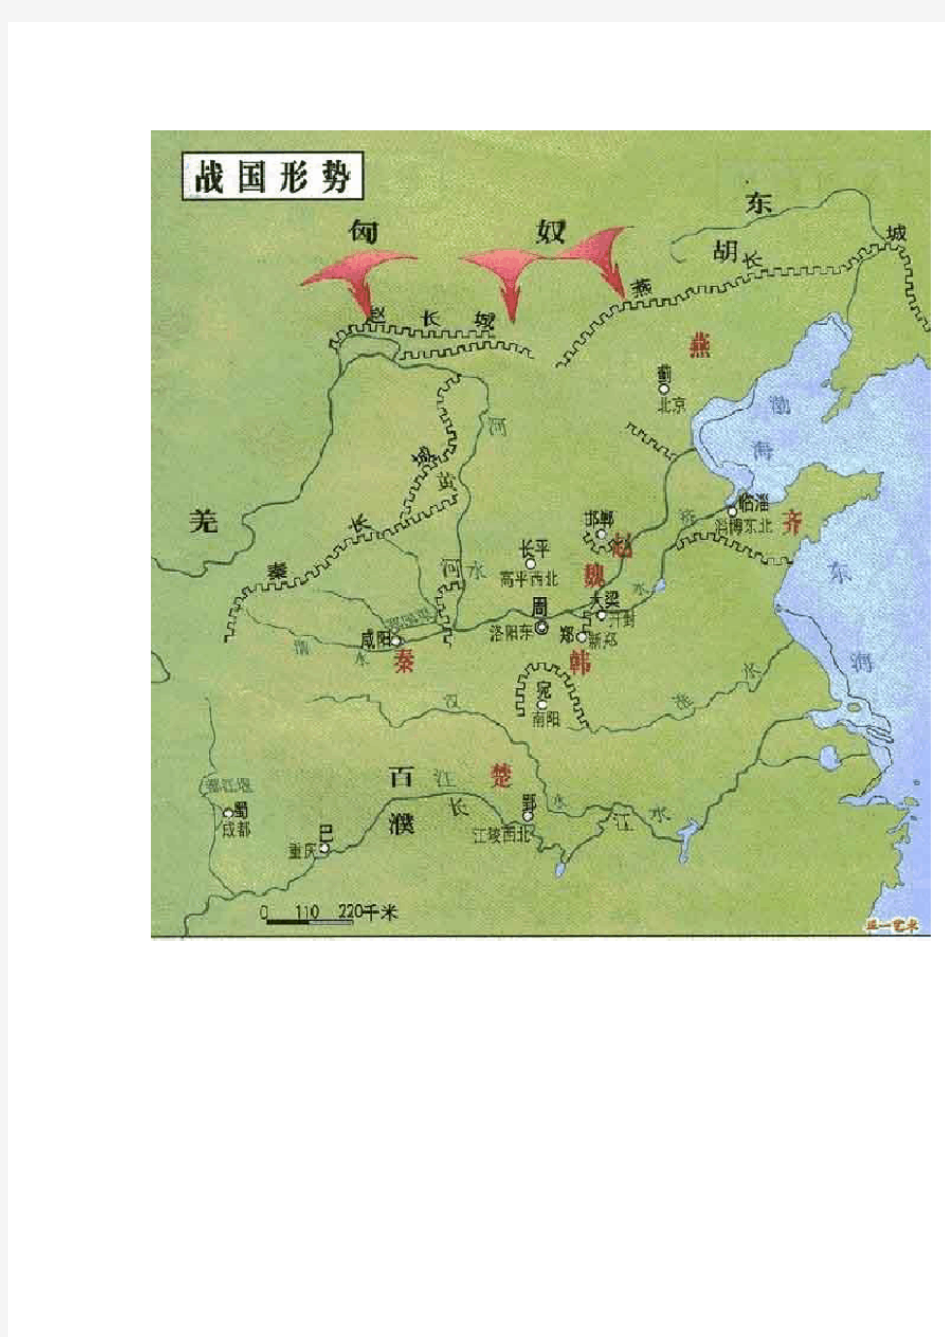 中国各朝代疆域面积地图(图)